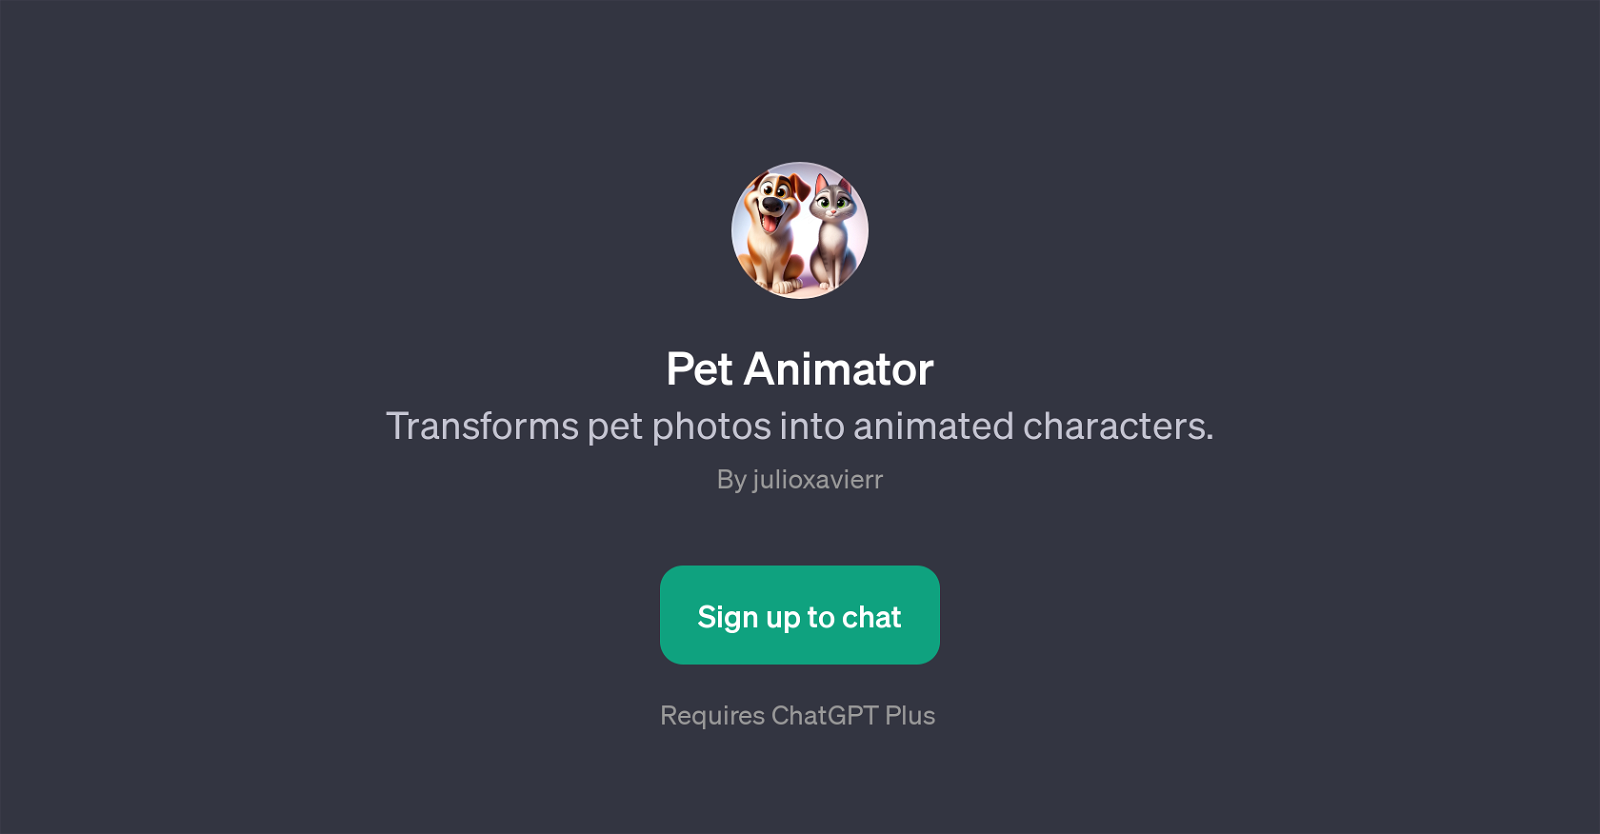 Pet Animator website